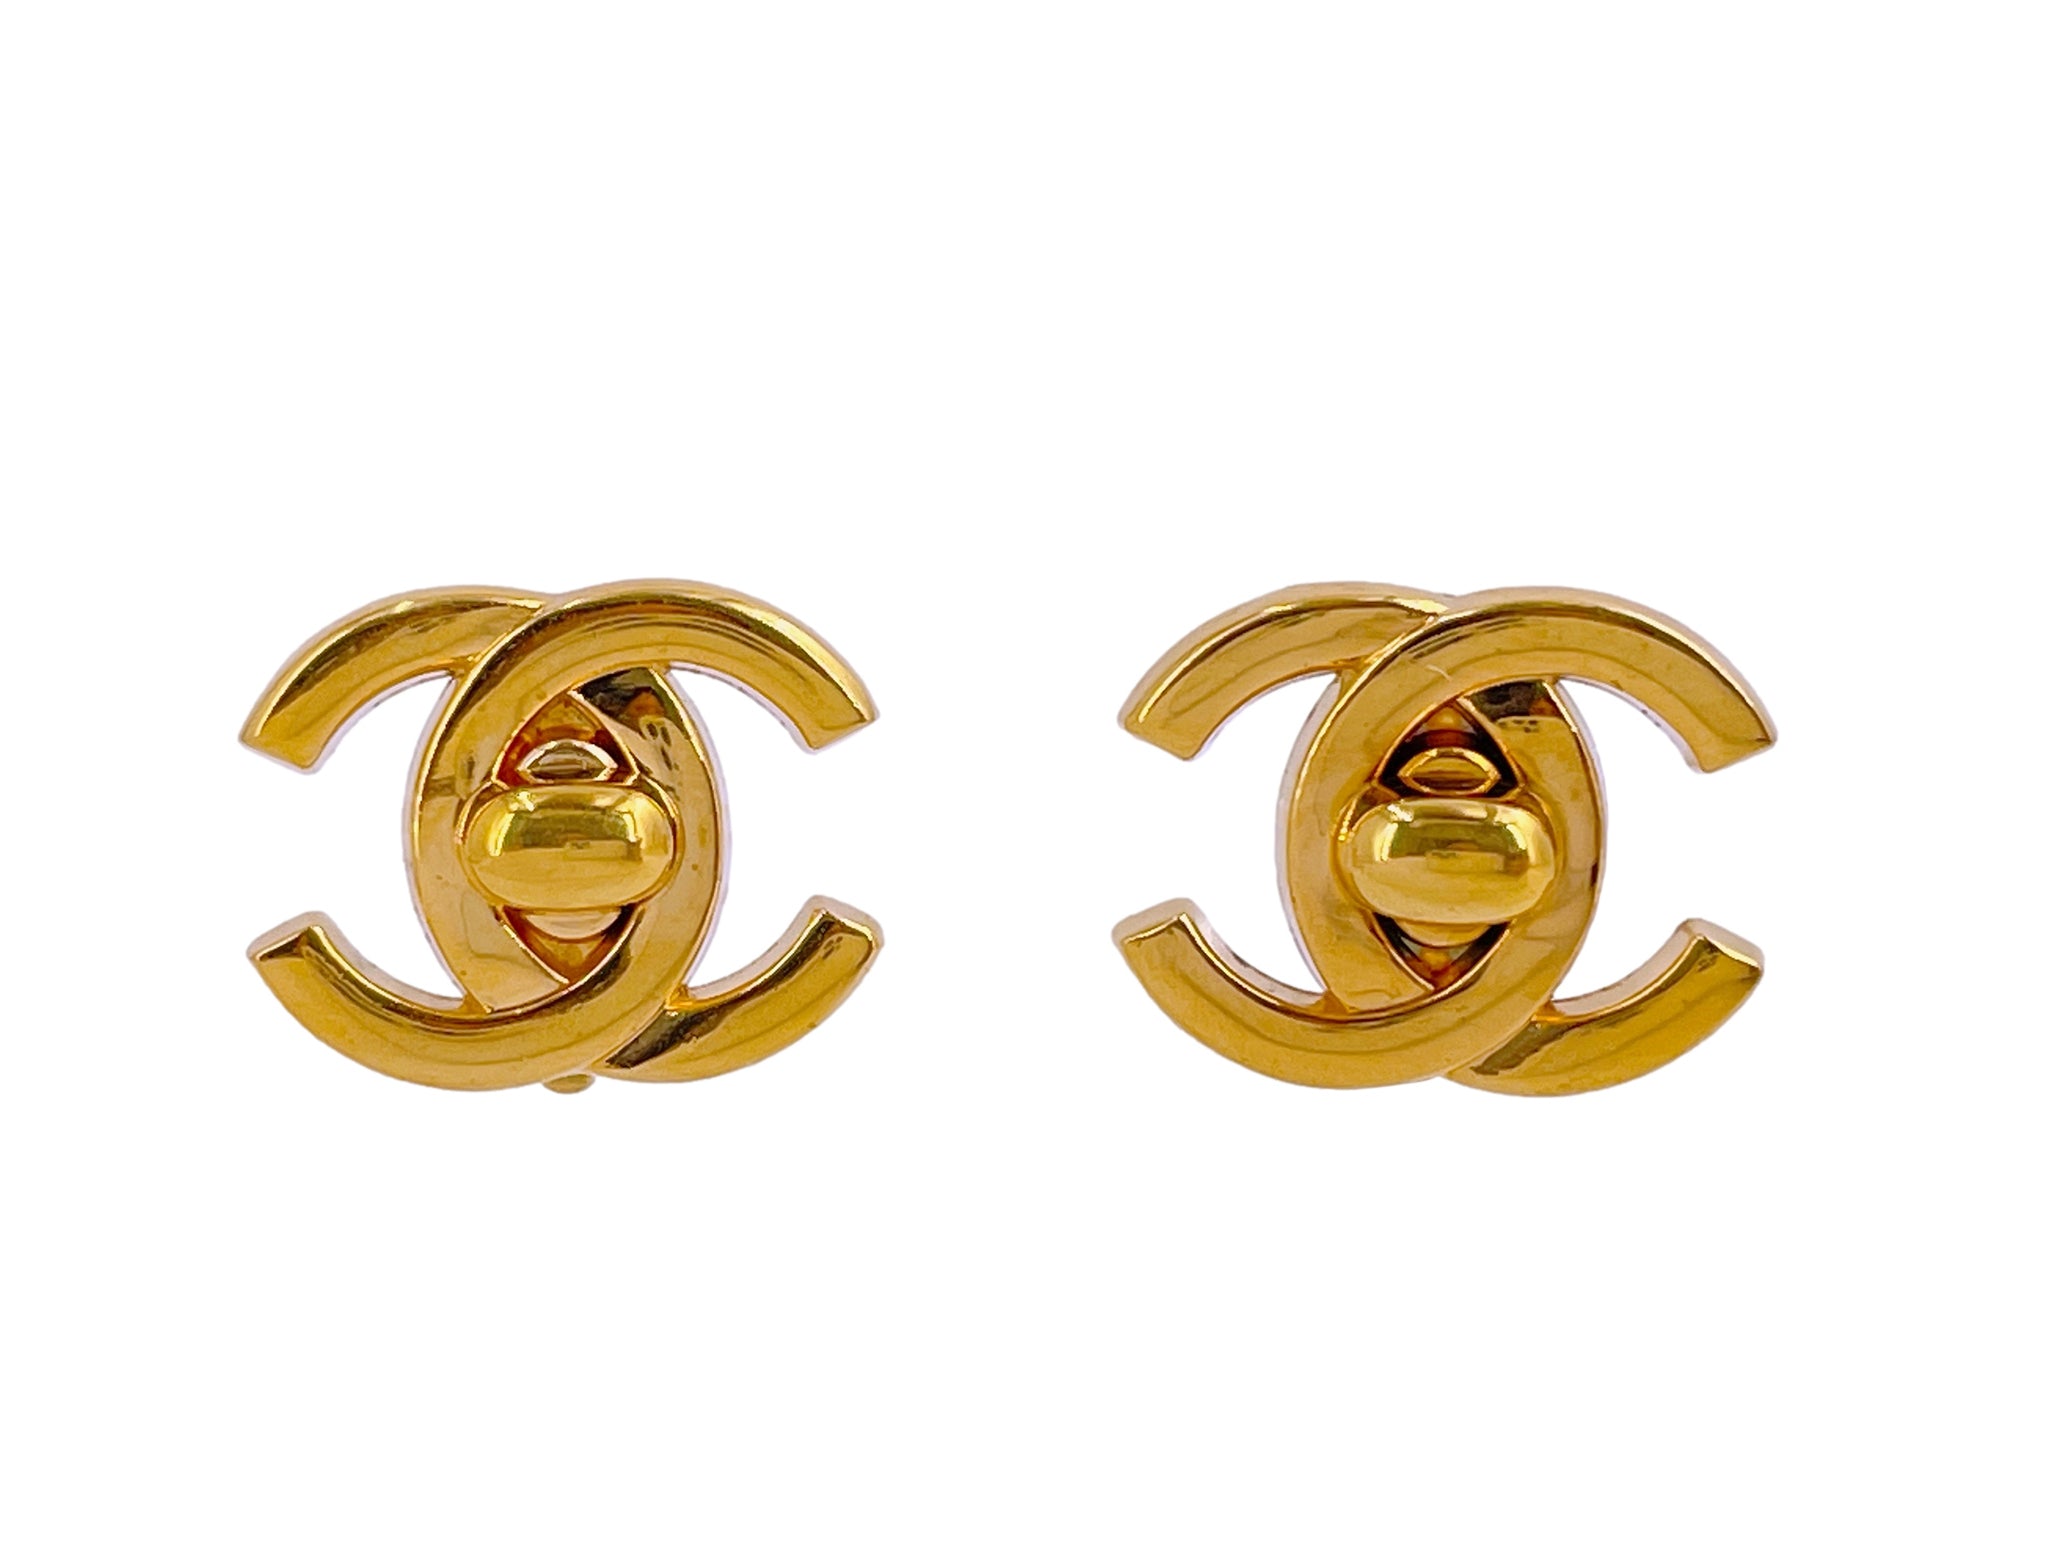 CHANEL, Jewelry, Chanel Cc Turnlock Earrings Vintage